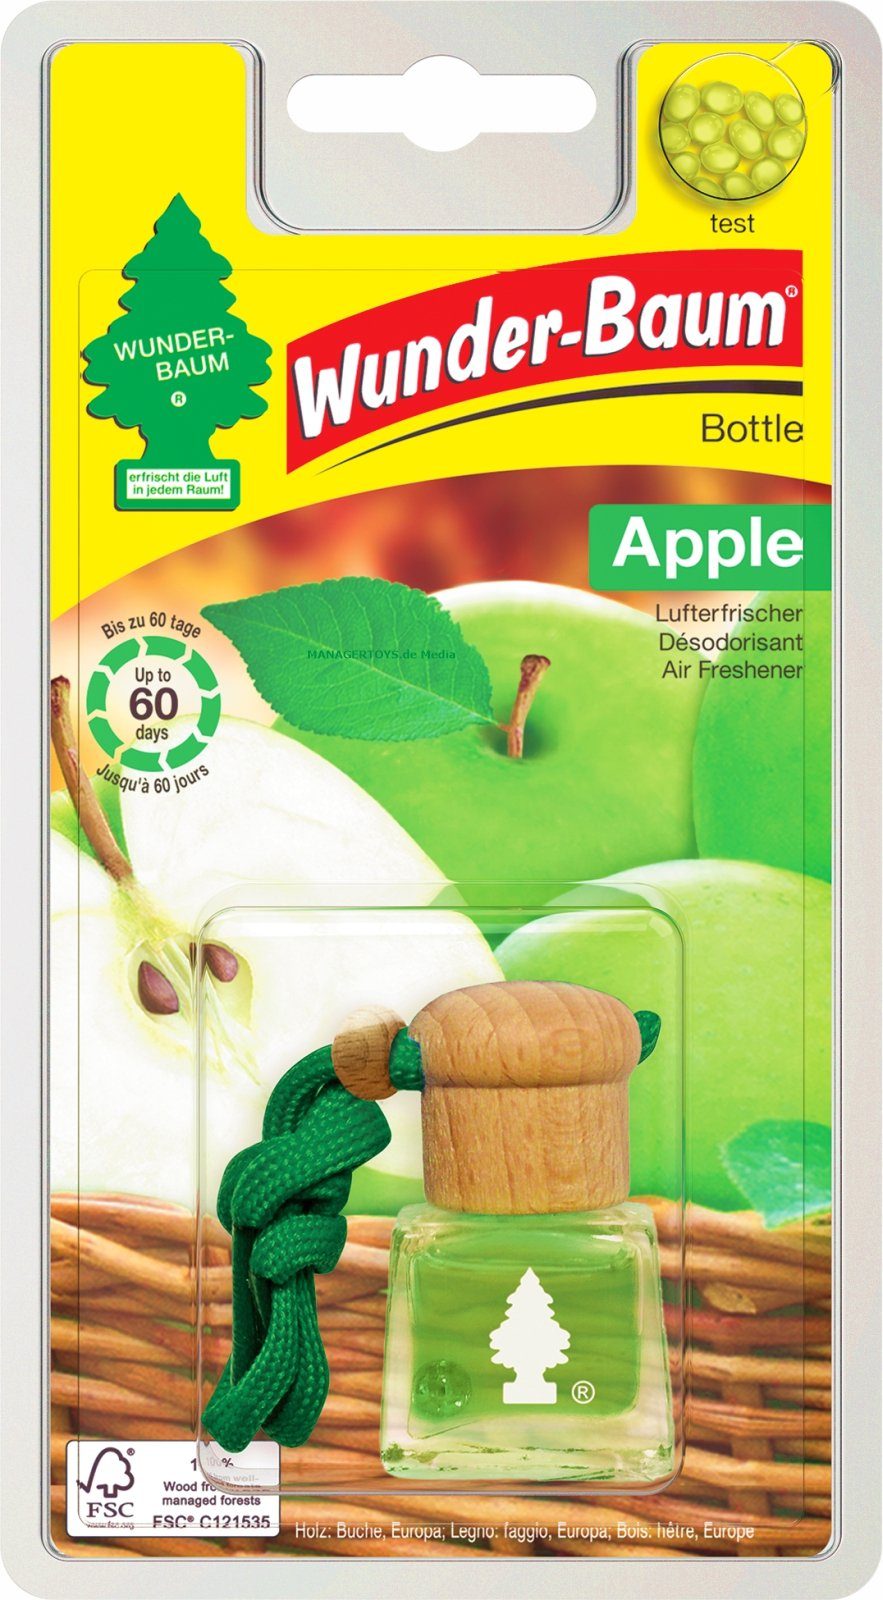 Wunder-Baum Duft-Set Bottle Duft ml Apple 4,5 Apfel Lufterfrischer Flakon WUNDERBAUM